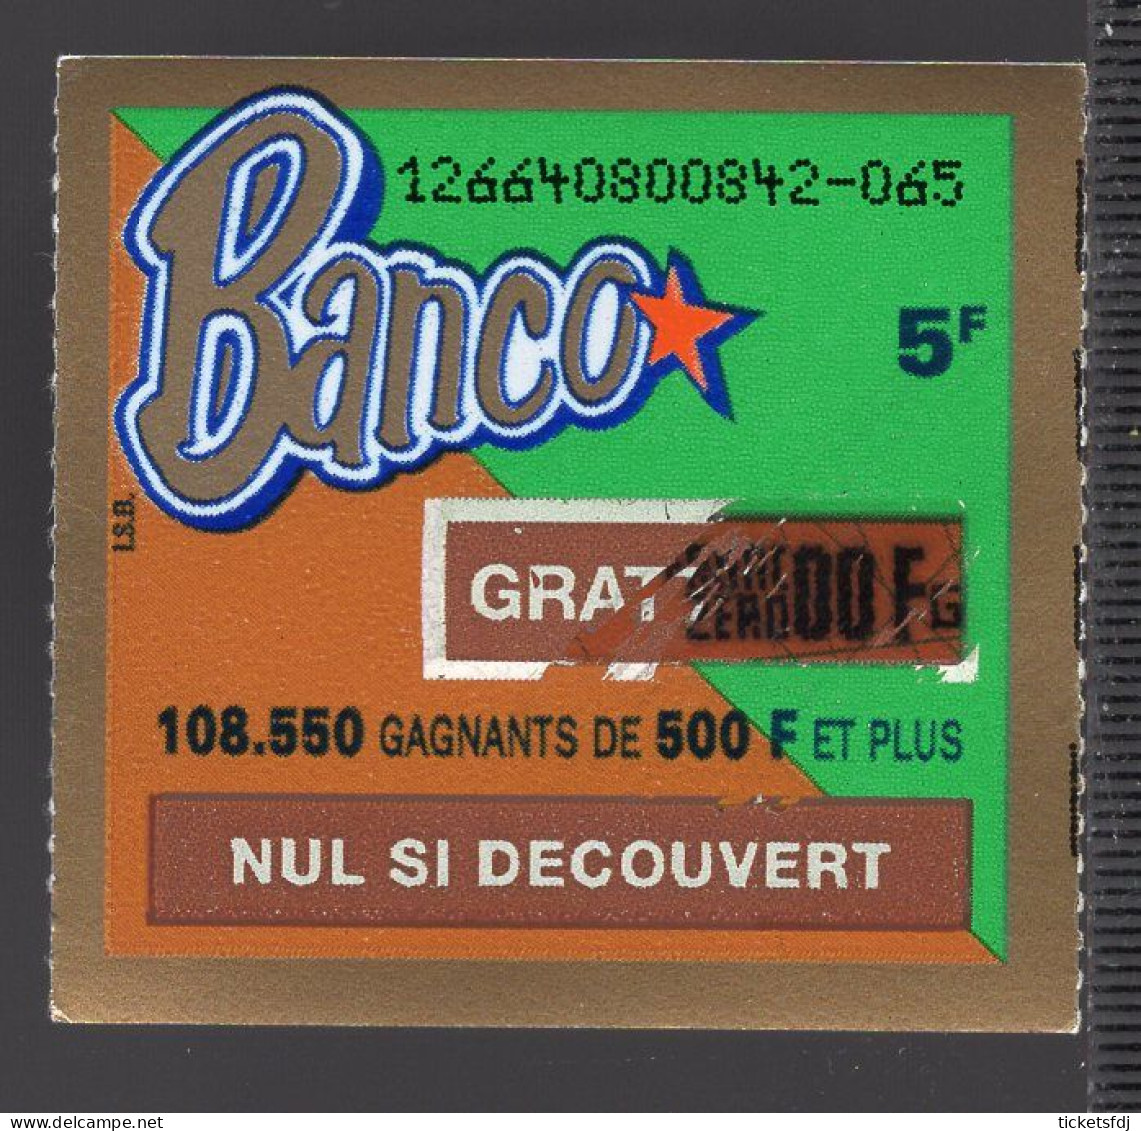 grattage FDJ - tickets BANCO en francs au choix (12661-12662-12663-12664-12665) FRANCAISE DES JEUX